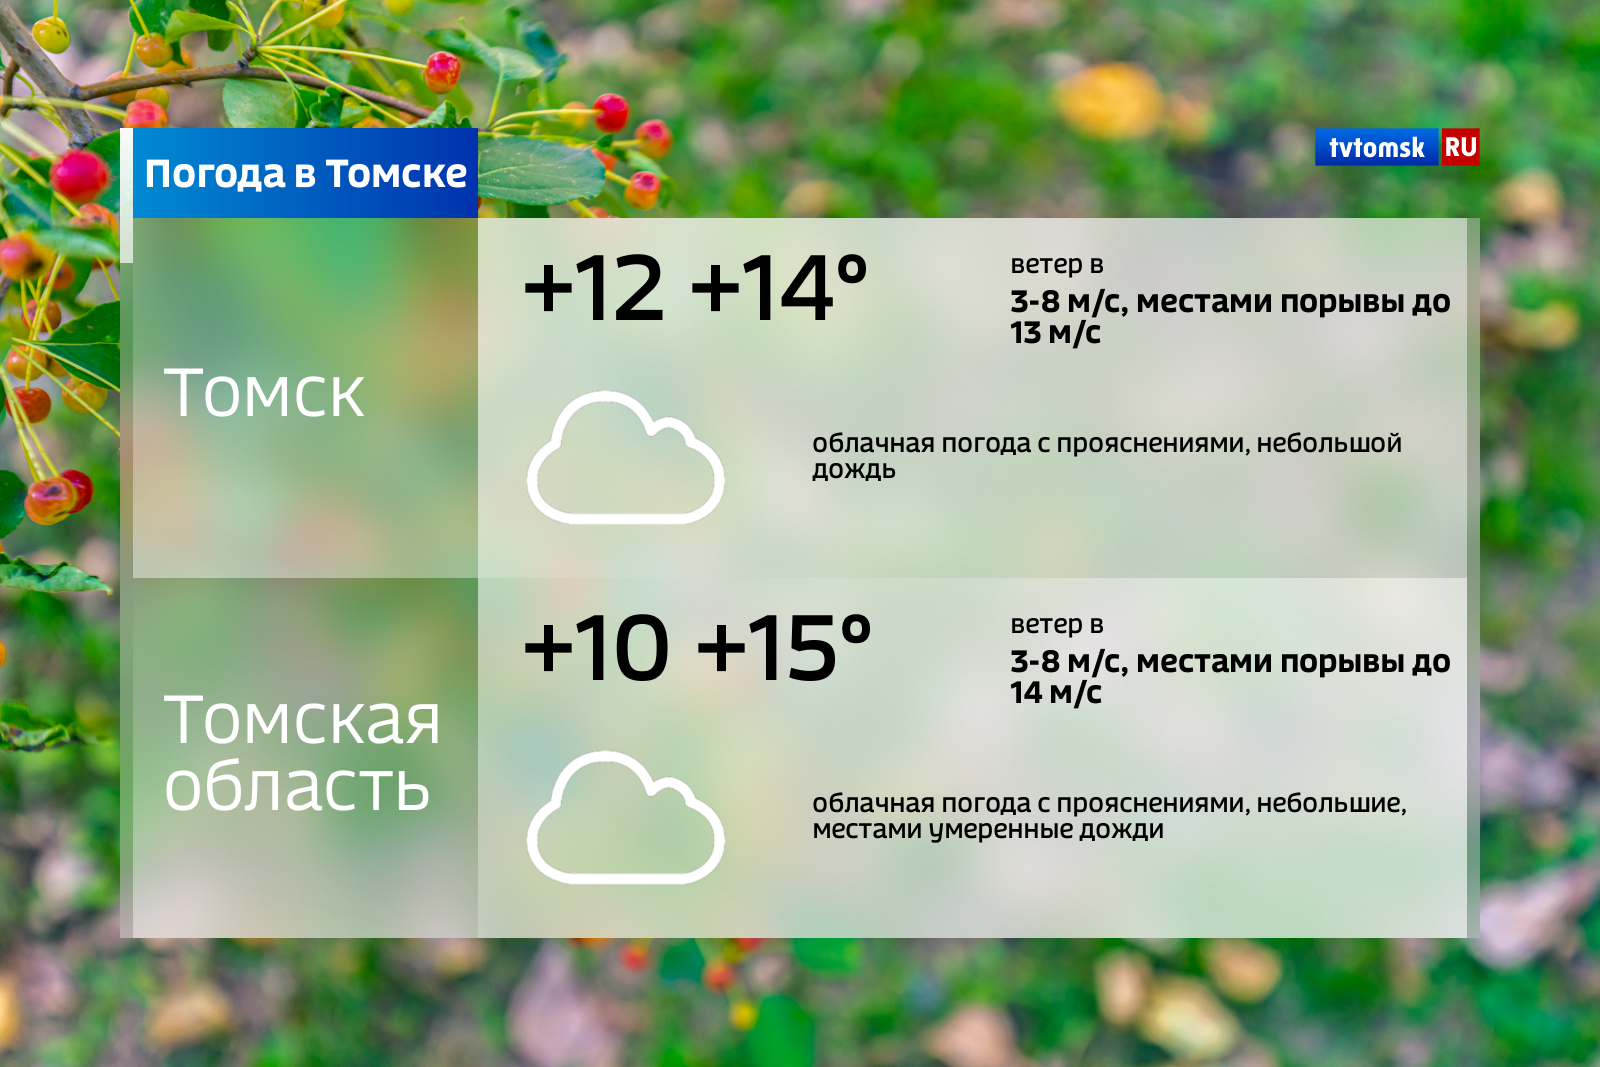 Погода в томском. Погода в Томске. Погода в Томске сегодня. Погода в Томске на завтра. Томск климат.